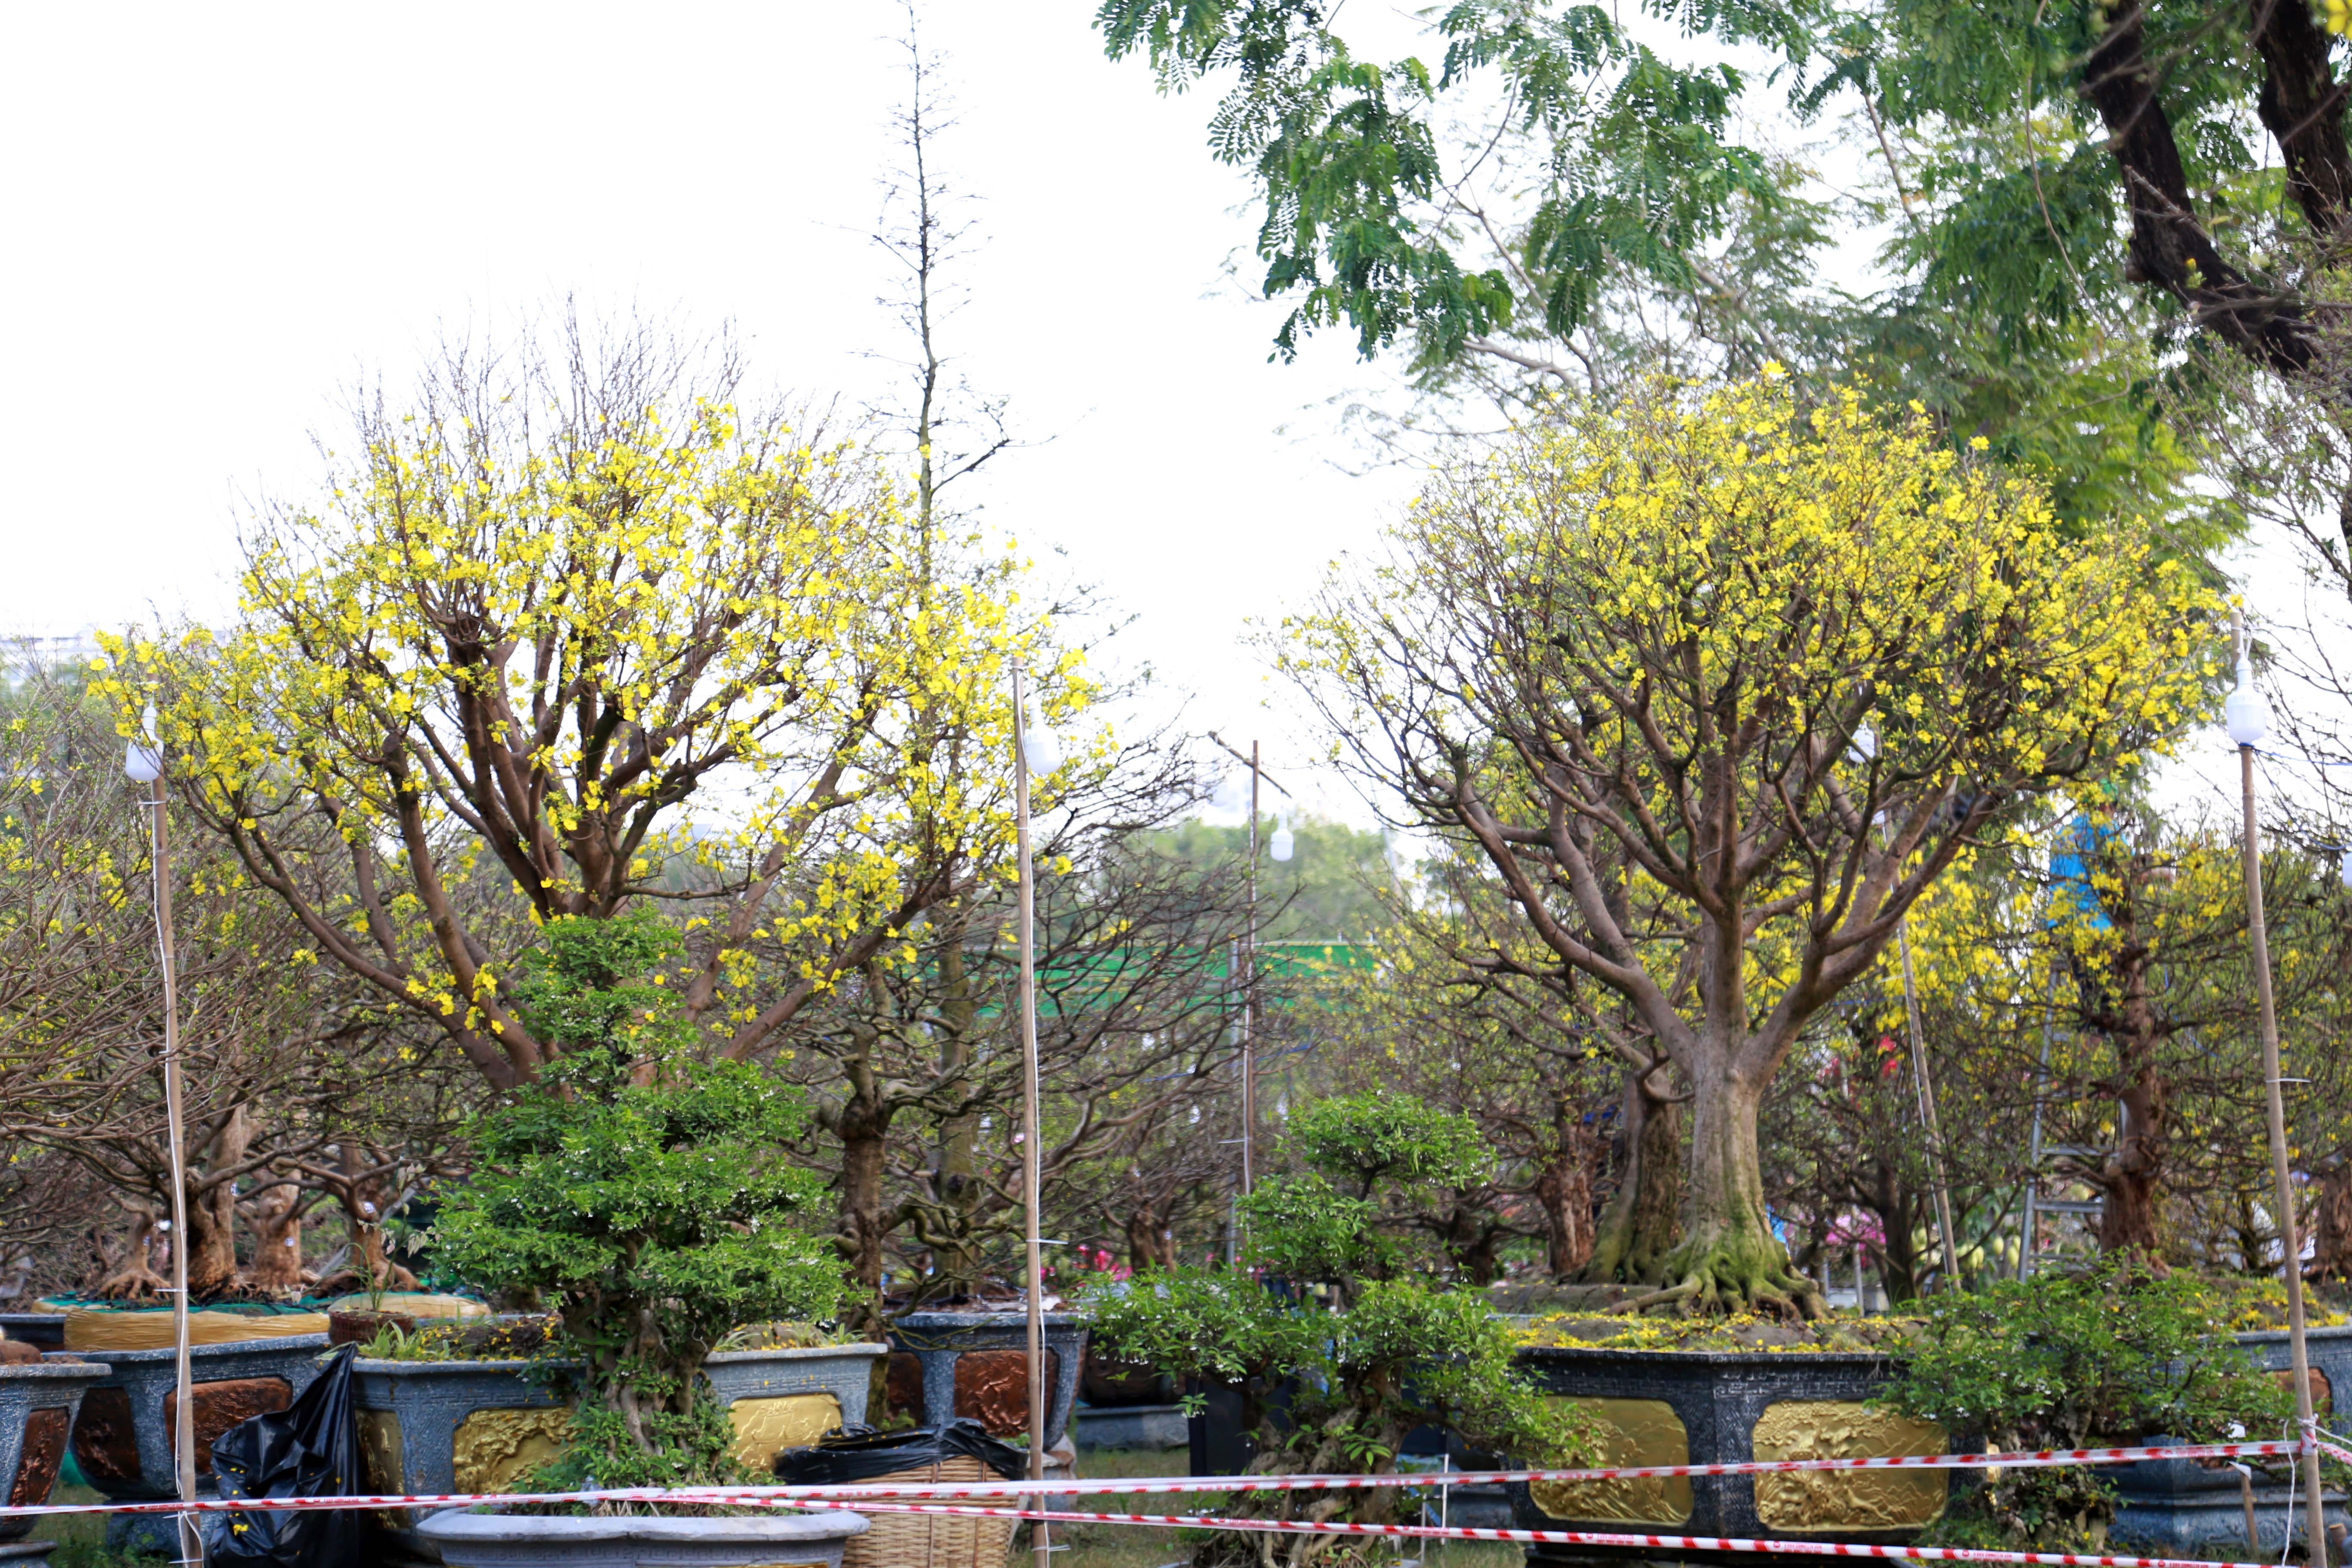 Nhiều năm qua, hội hoa xuân Phú Mỹ Hưng luôn nổi tiếng là nơi quy tụ nhiều loại cây hoa đa dạng phong phú và đặc biệt. Năm nay cũng vậy, tại hội hoa xuân có nhiều gốc mai cổ thụ.